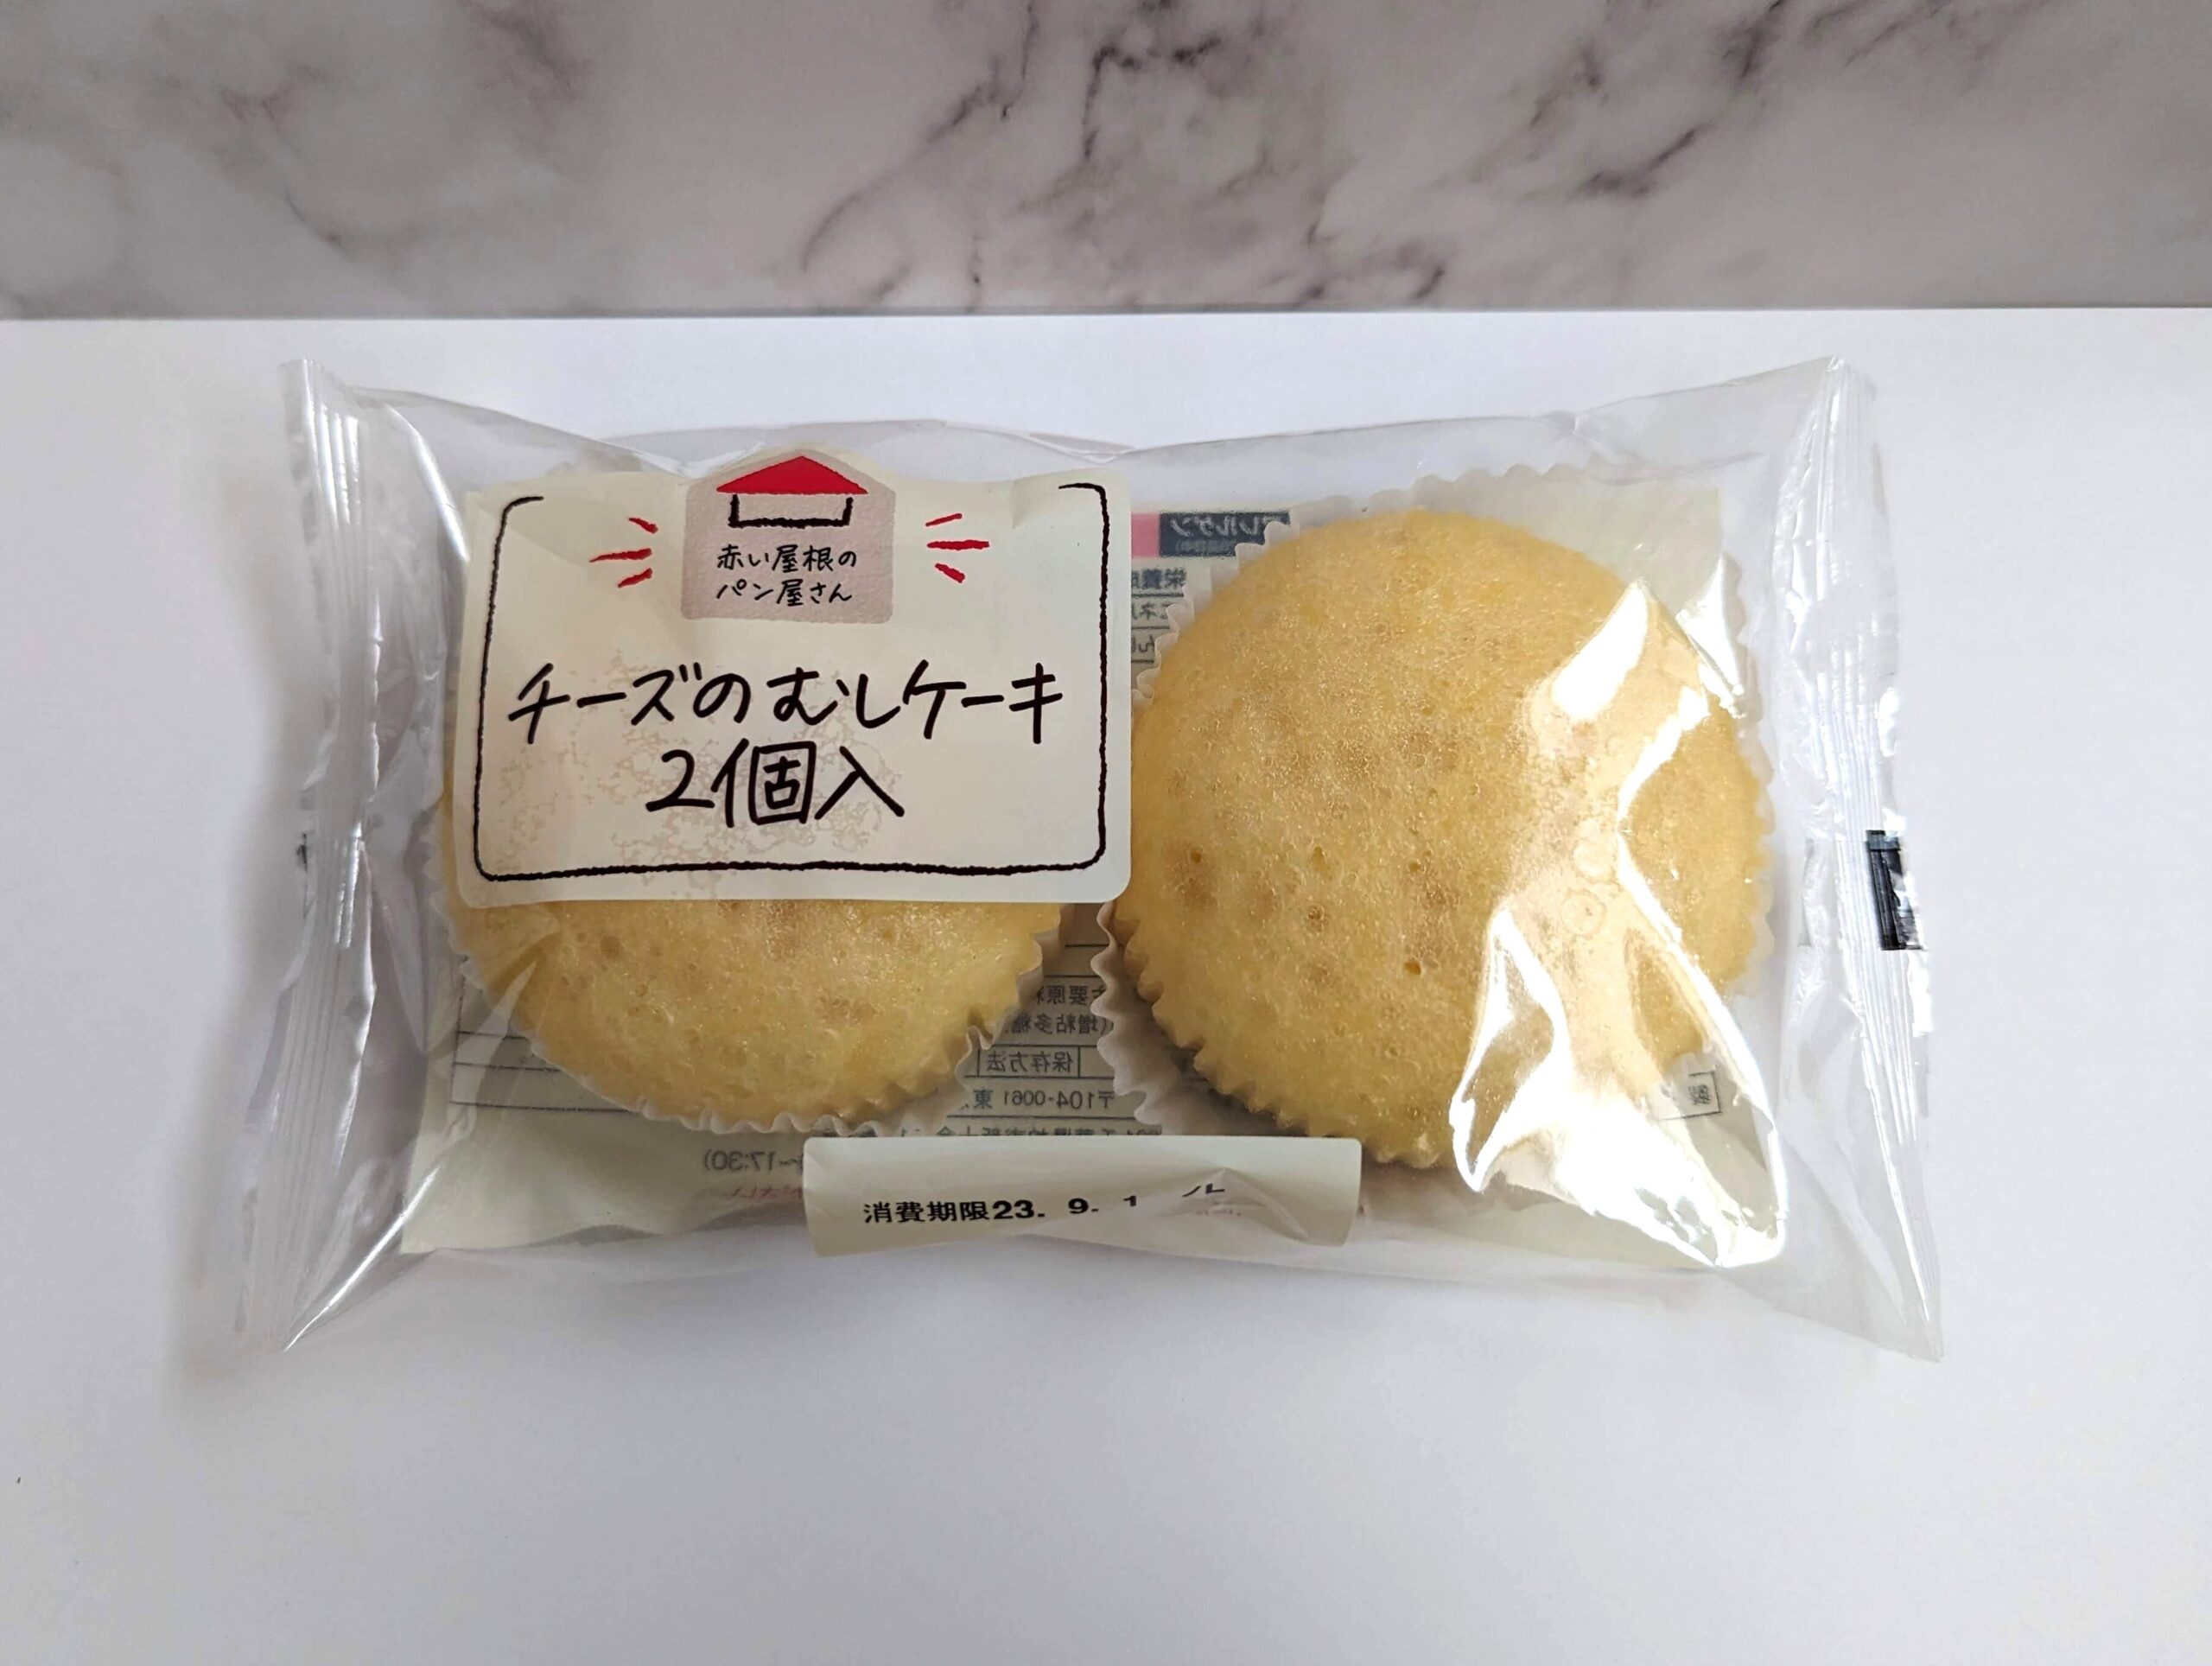 木村屋の「チーズの蒸しケーキ」の写真 (1)